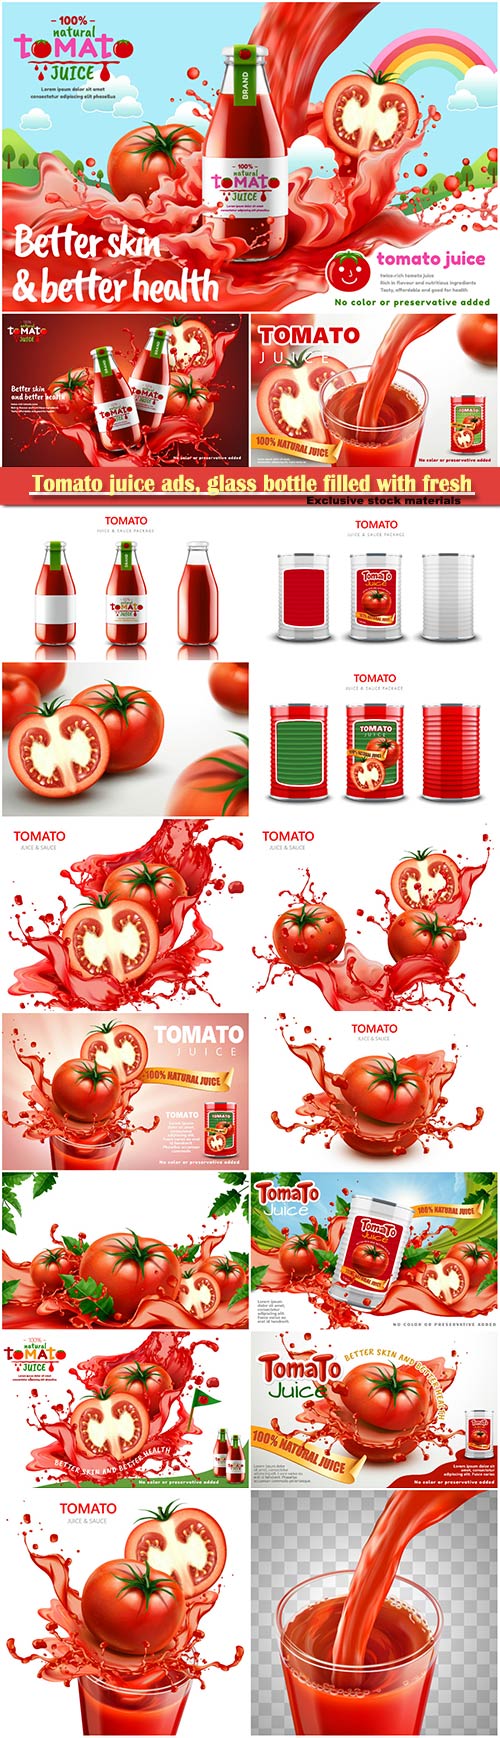 Tomato juice ads, glass bottle filled with fresh tomato juice with splashin ...